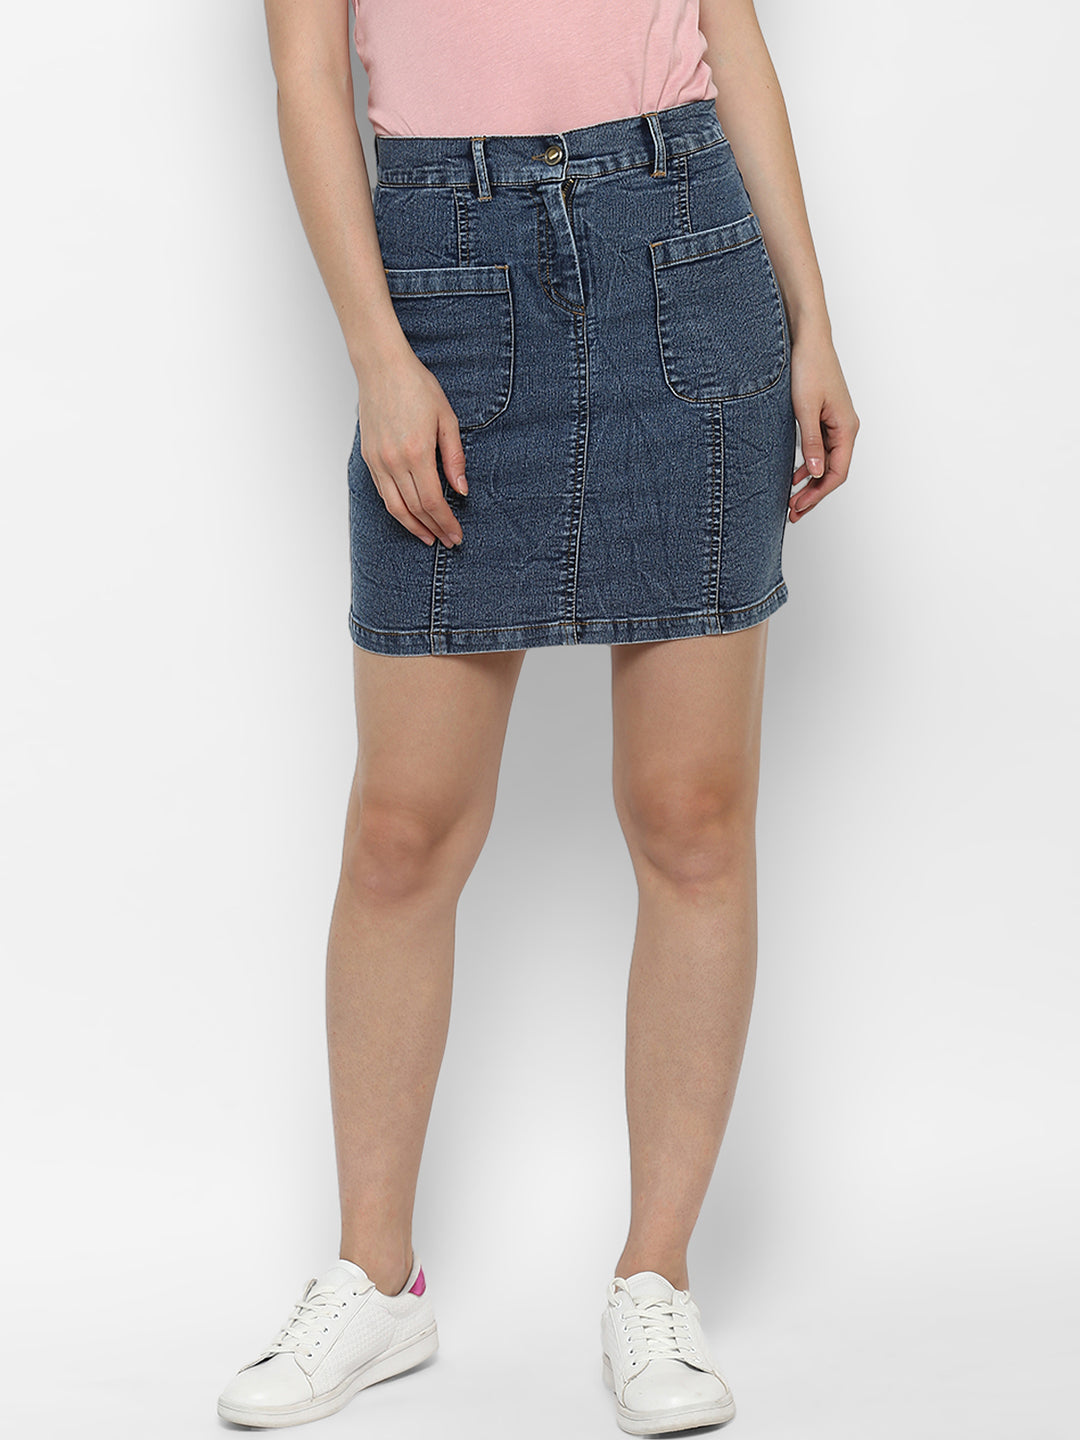 Women's Denim Two Pocket Style Skirt